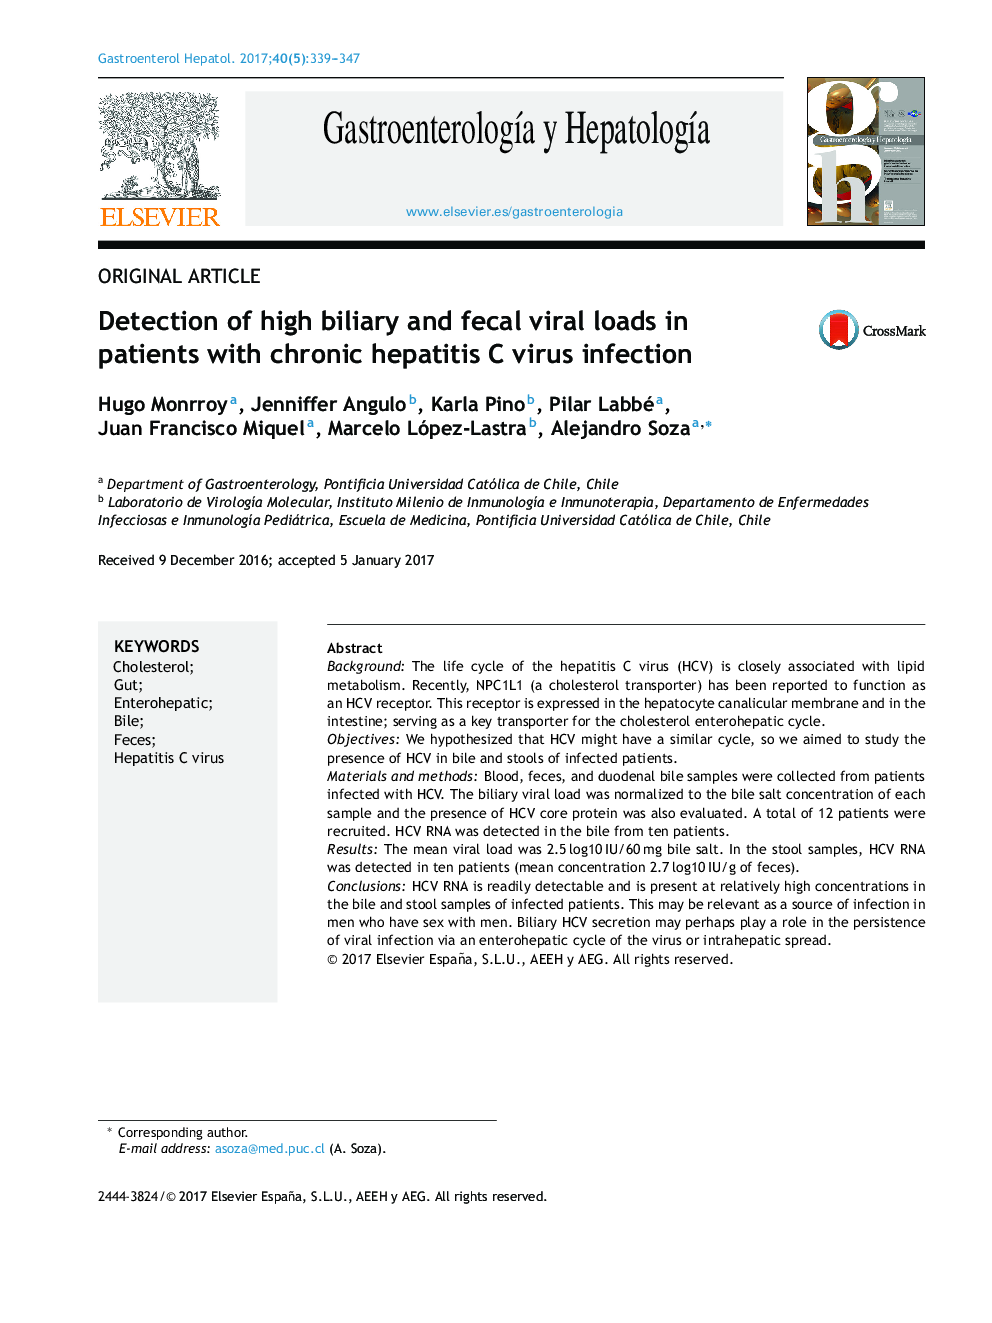 تشخیص بارهای بالای ویروسی مجاری صفراوی و مدفوع در بیماران مبتلا به عفونت ویروسی هپاتیت مزمن 